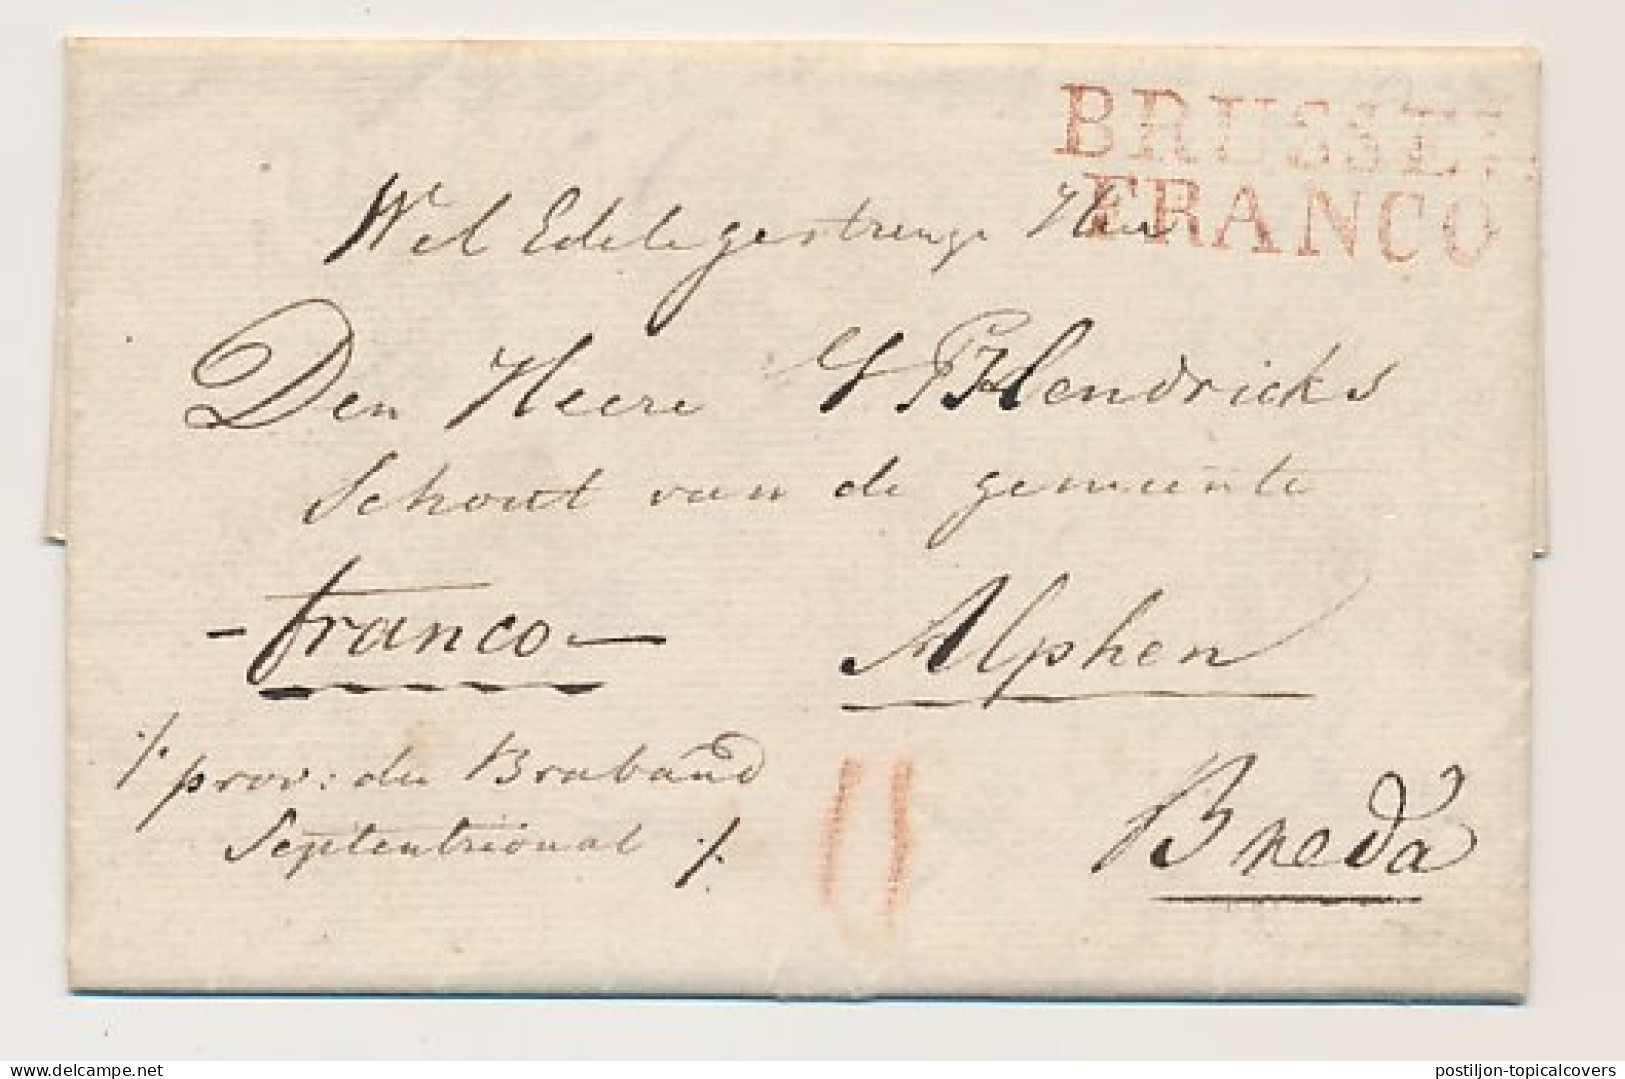 BRUSSEL FRANCO - DEB.119 ALPHEN 1825 - ...-1852 Préphilatélie